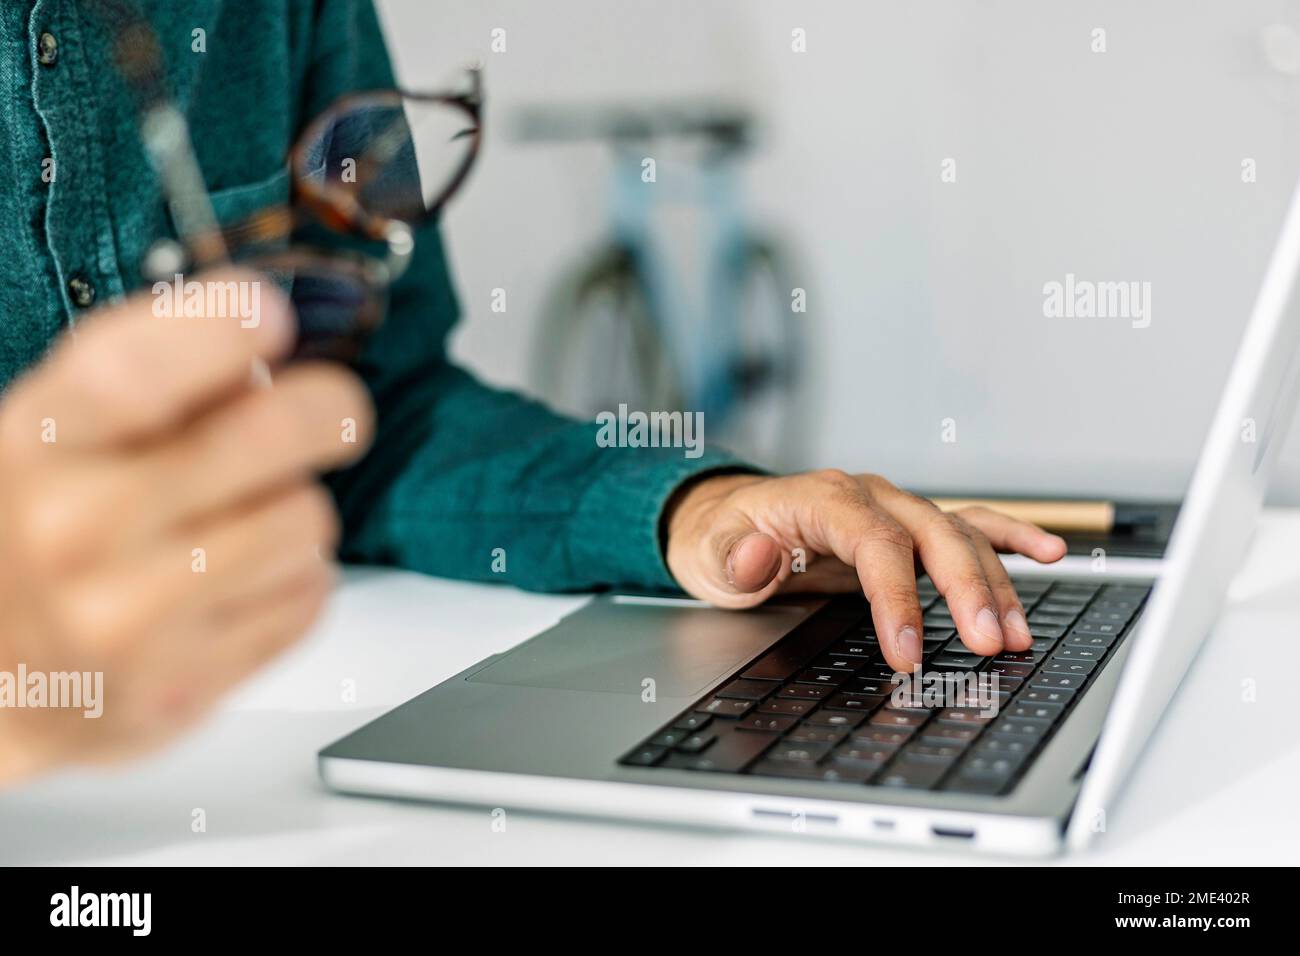 Main de freelance dactylographiant sur le clavier d'ordinateur portable au bureau Banque D'Images